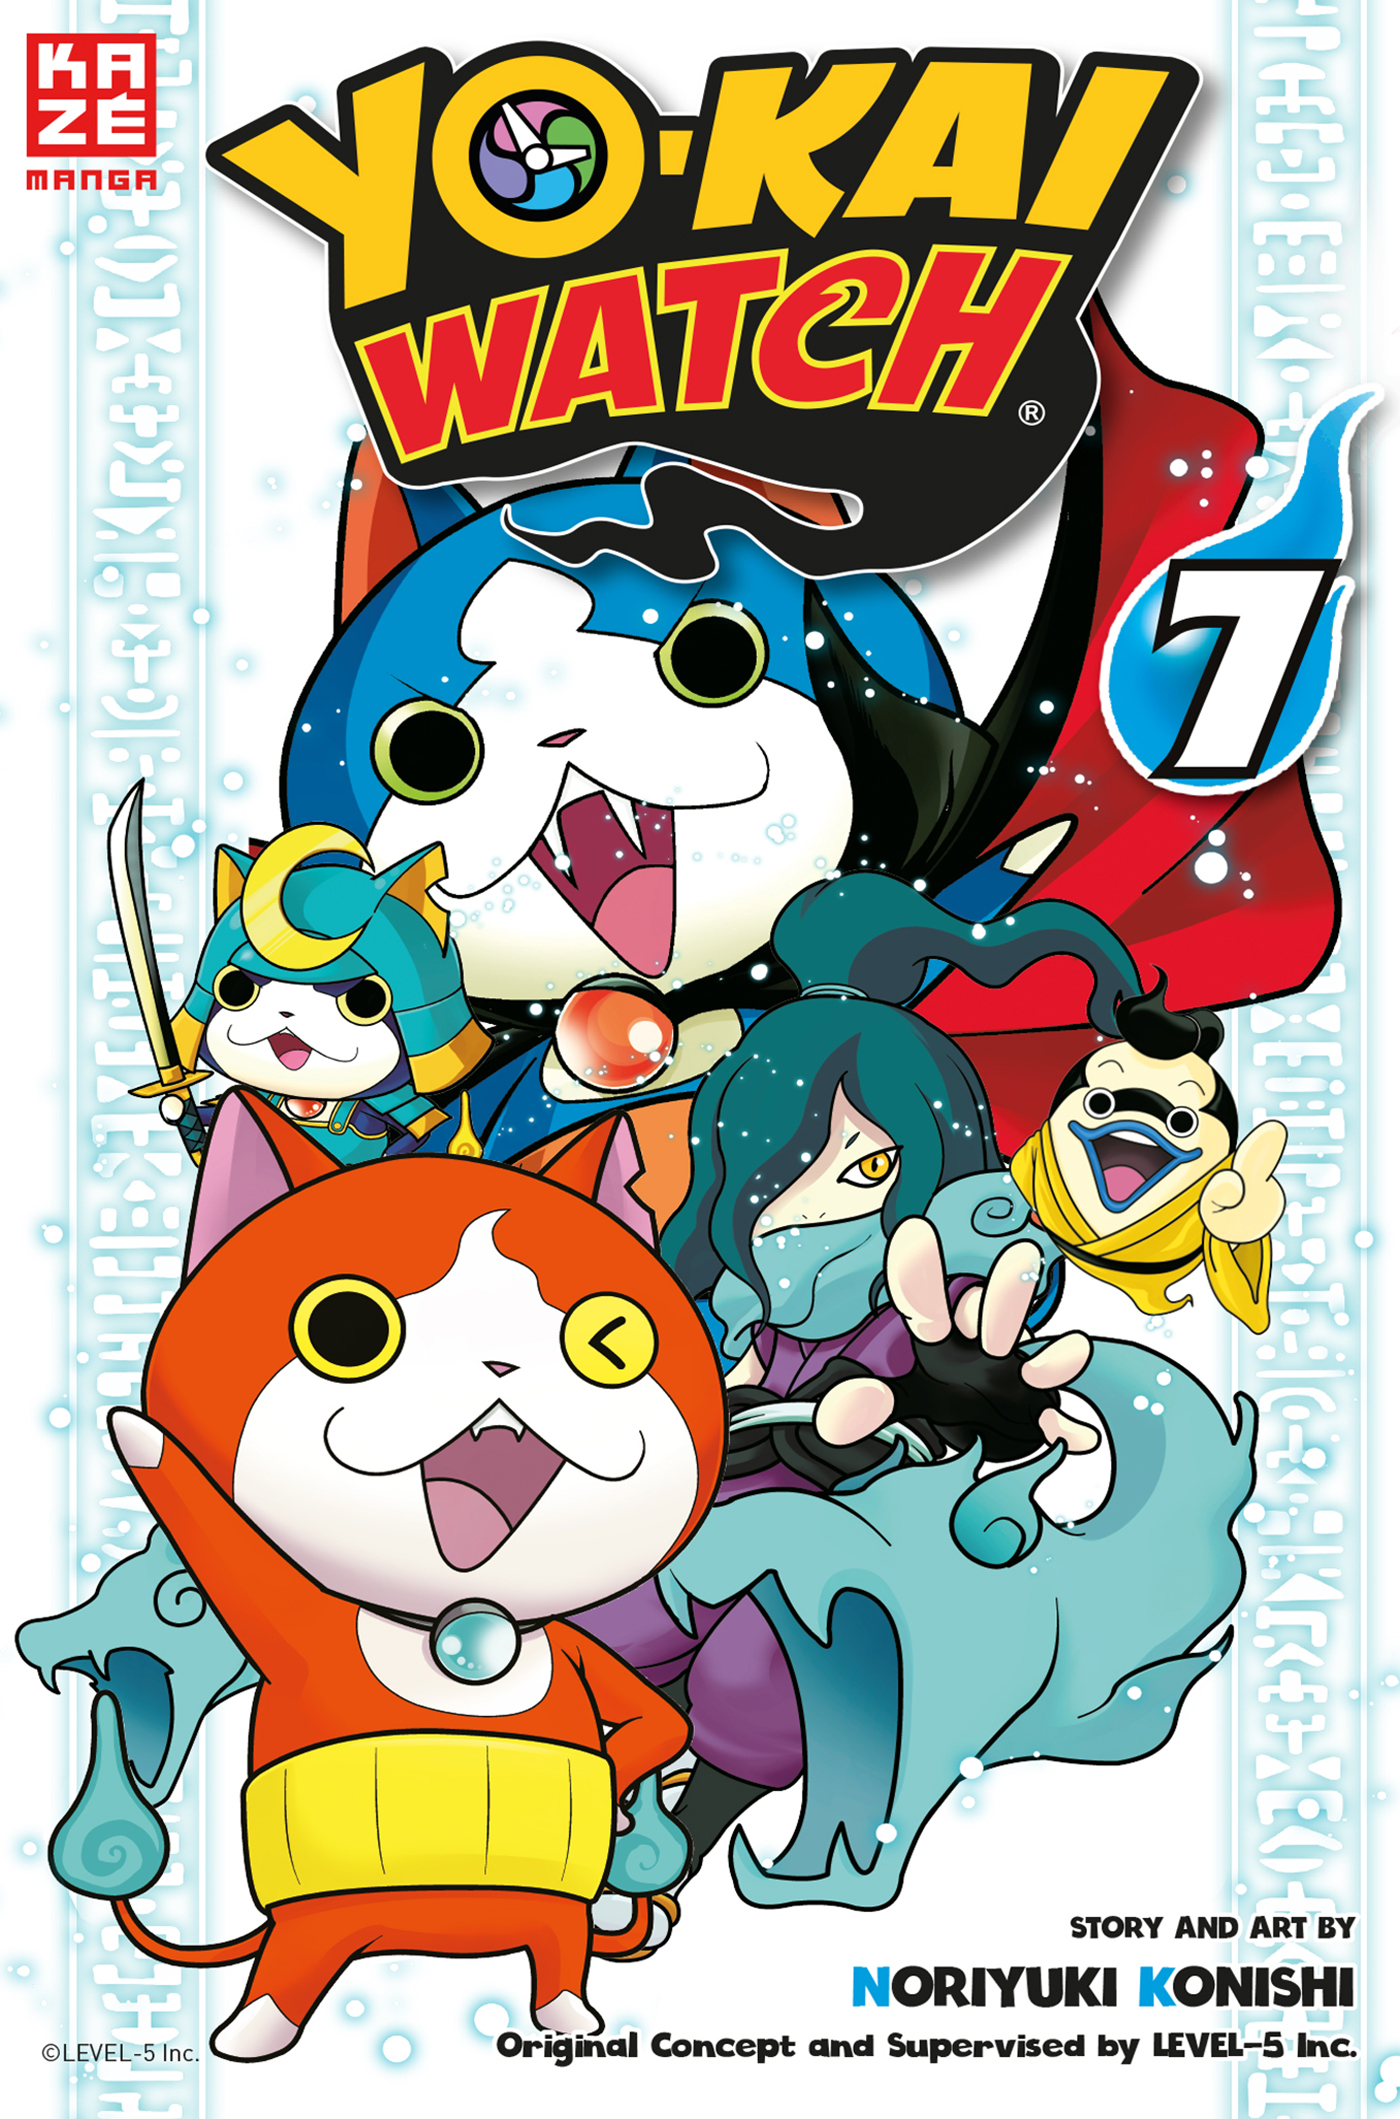 7 Band - Yo-Kai Watch